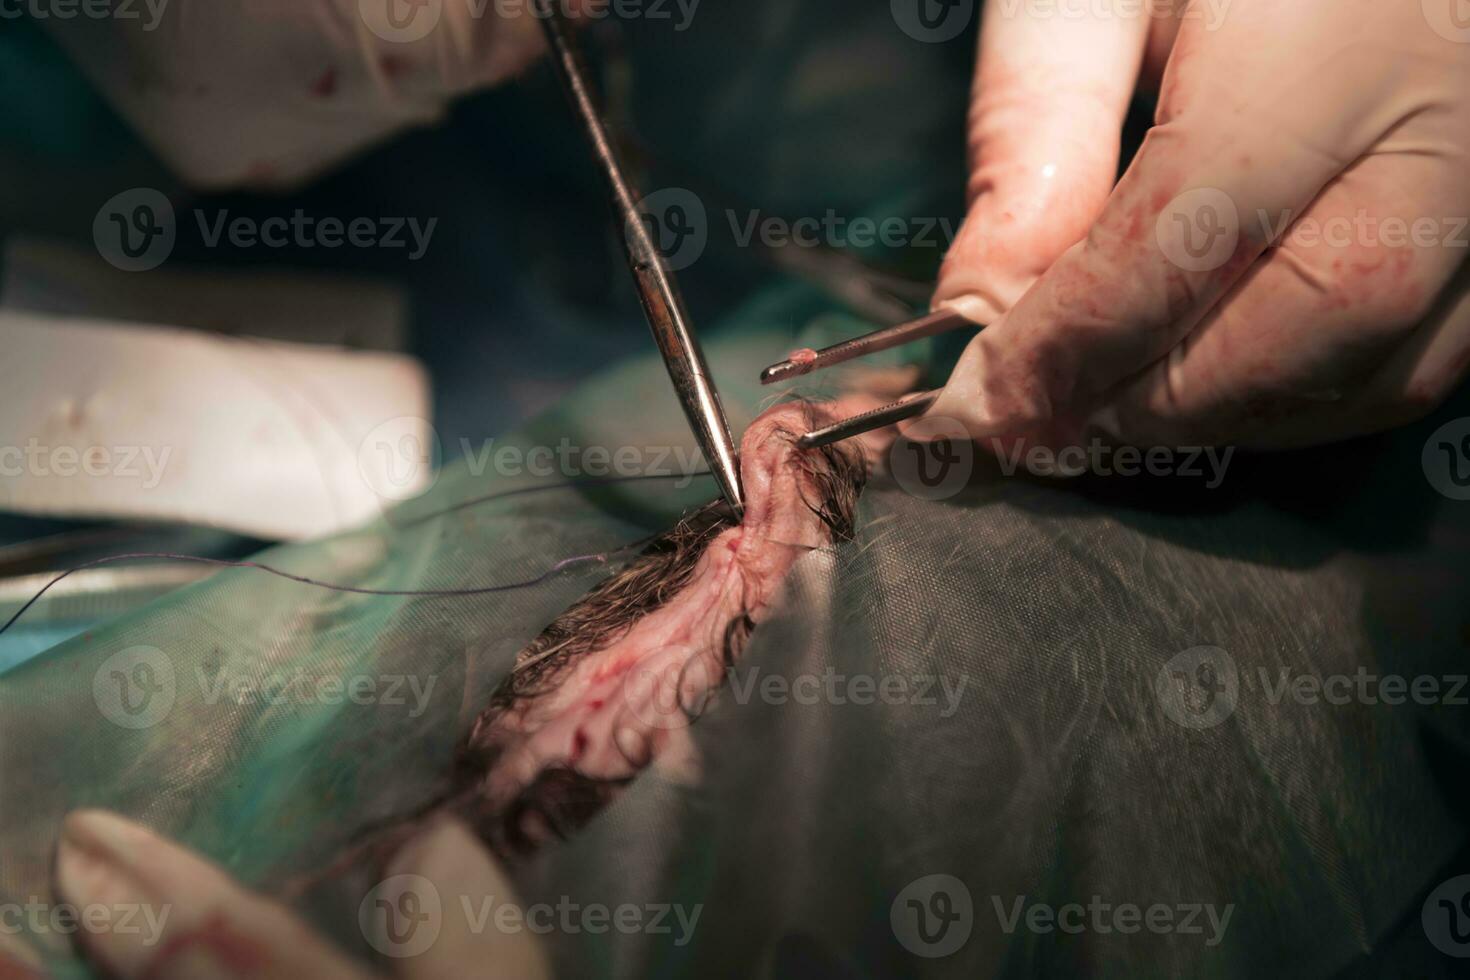 een team van chirurgen en dierenartsen die castratie- of sterilisatieoperaties uitvoeren op een kat in een dierenziekenhuis. foto